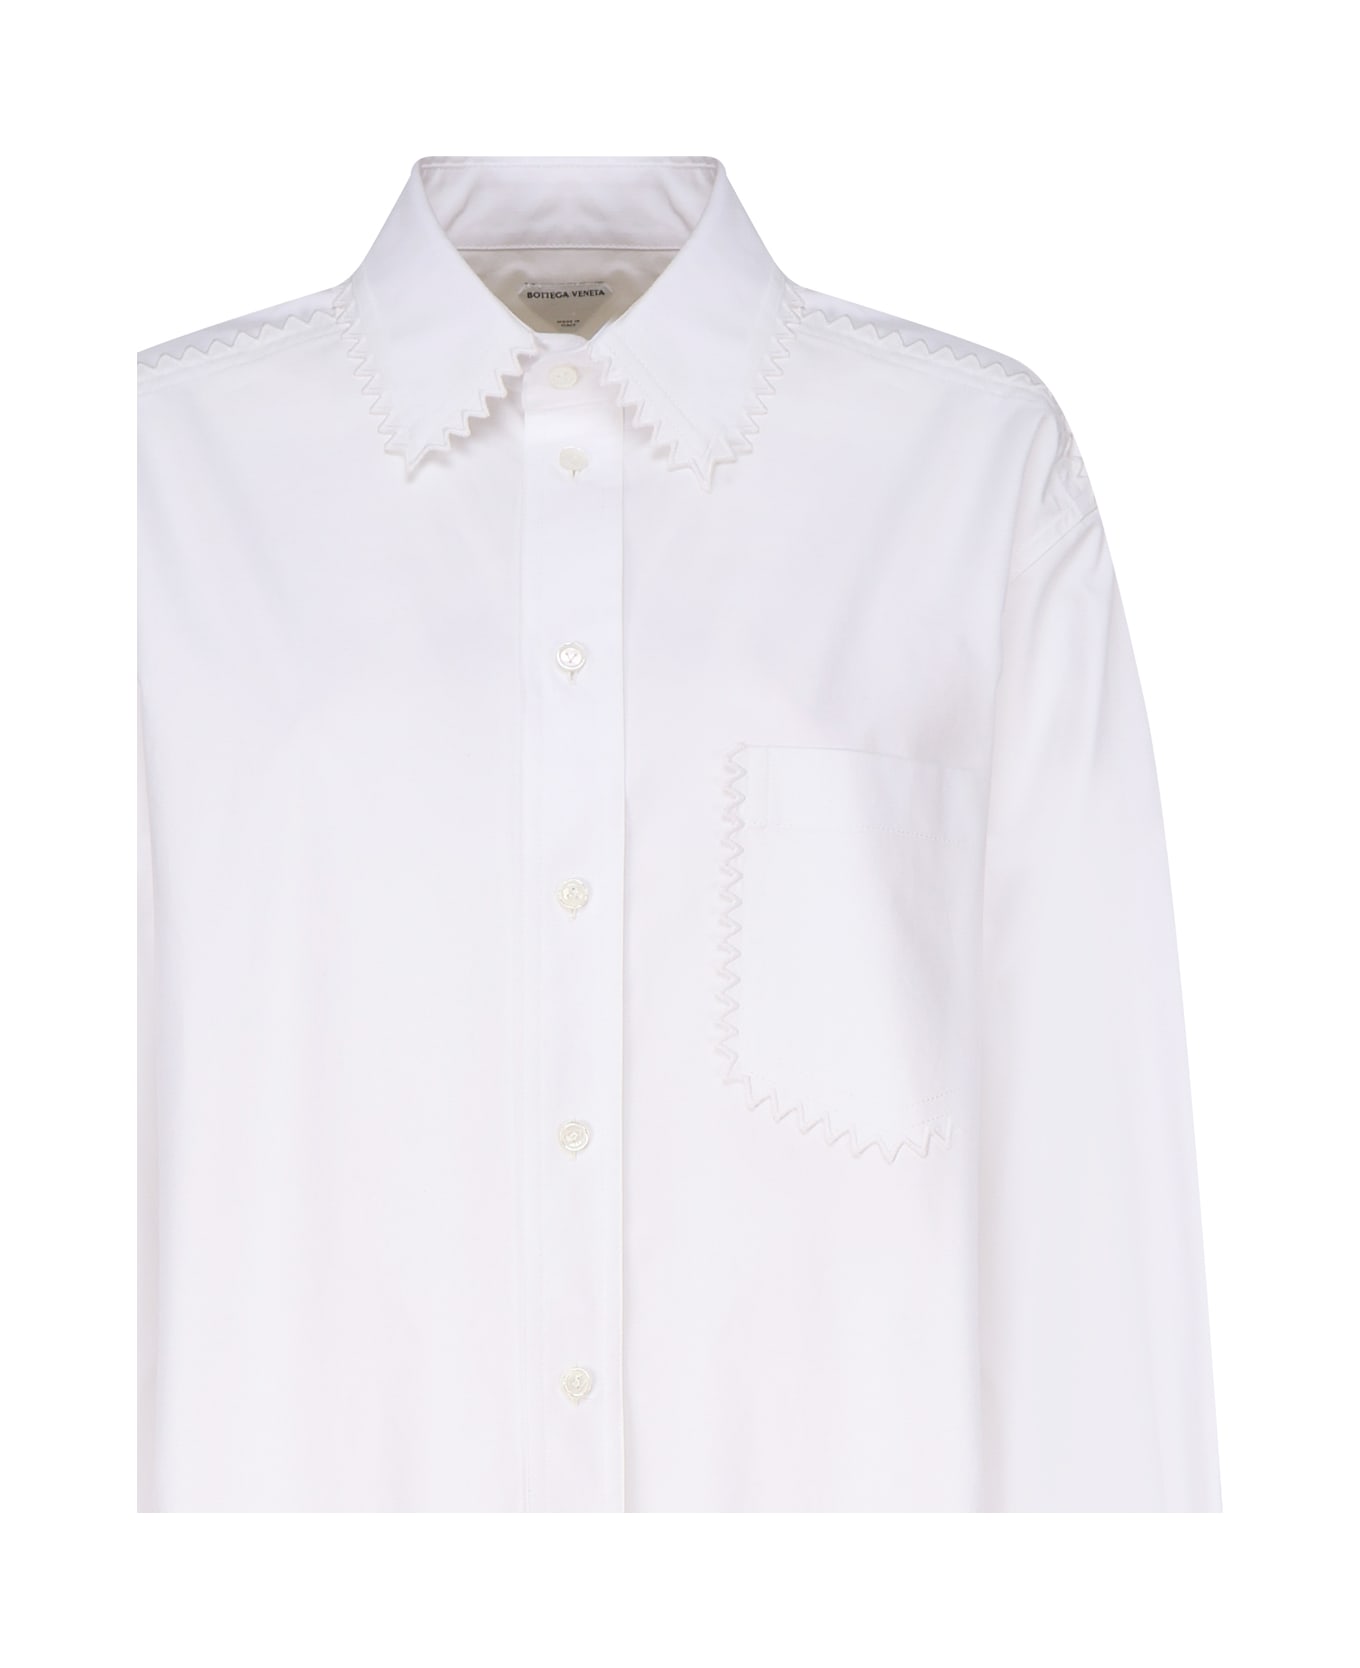 Bottega Veneta Oxford Shirt - White